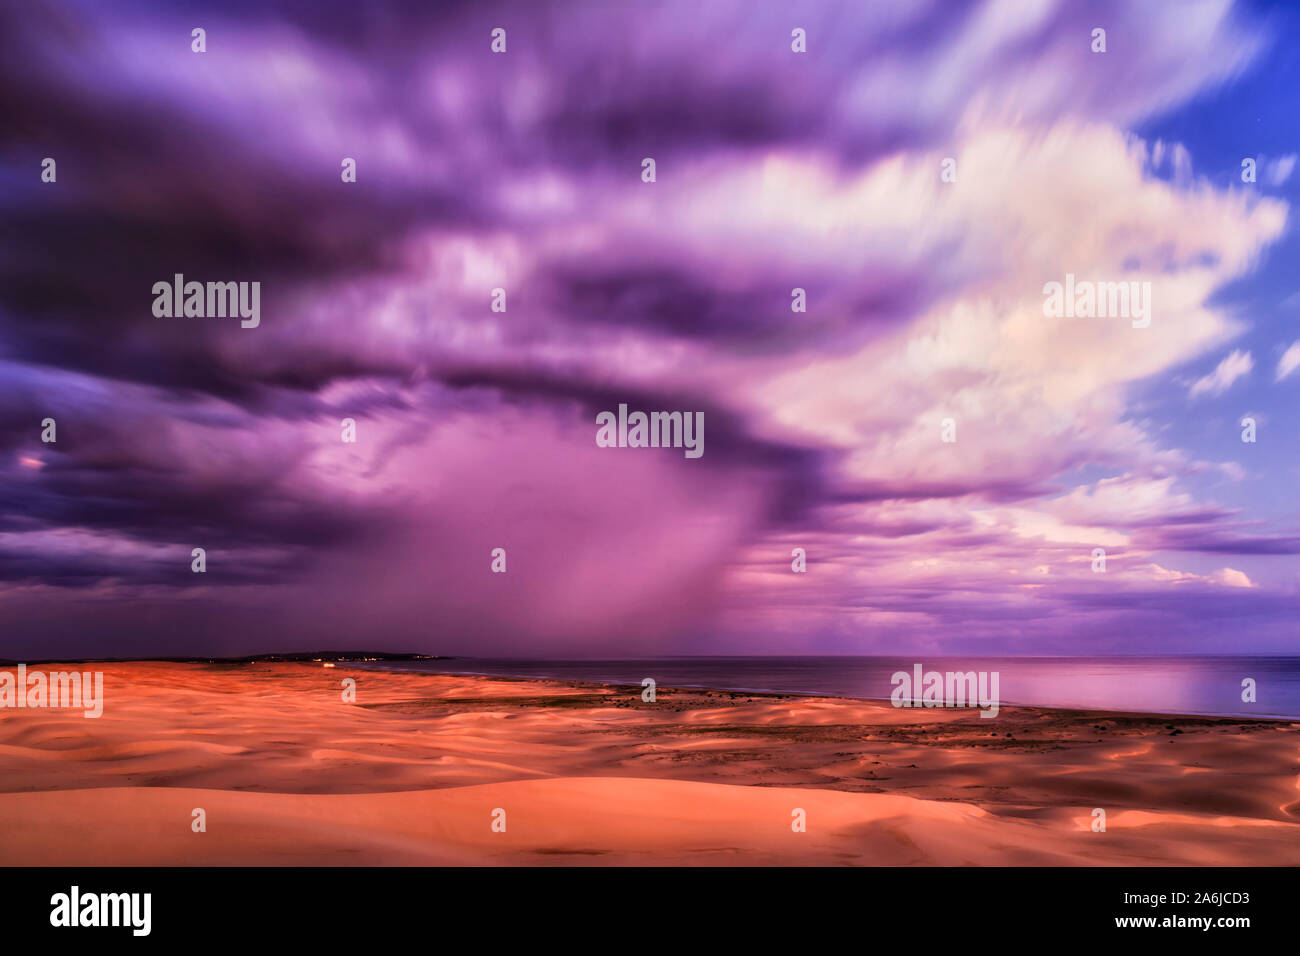 Hohen Himmel mit unscharfen Wolken bei Sonnenuntergang die letzten Tag Licht über den Pazifischen Ozean und Sanddünen von Stockton Strand in Australien - bunte Seascape Stockfoto